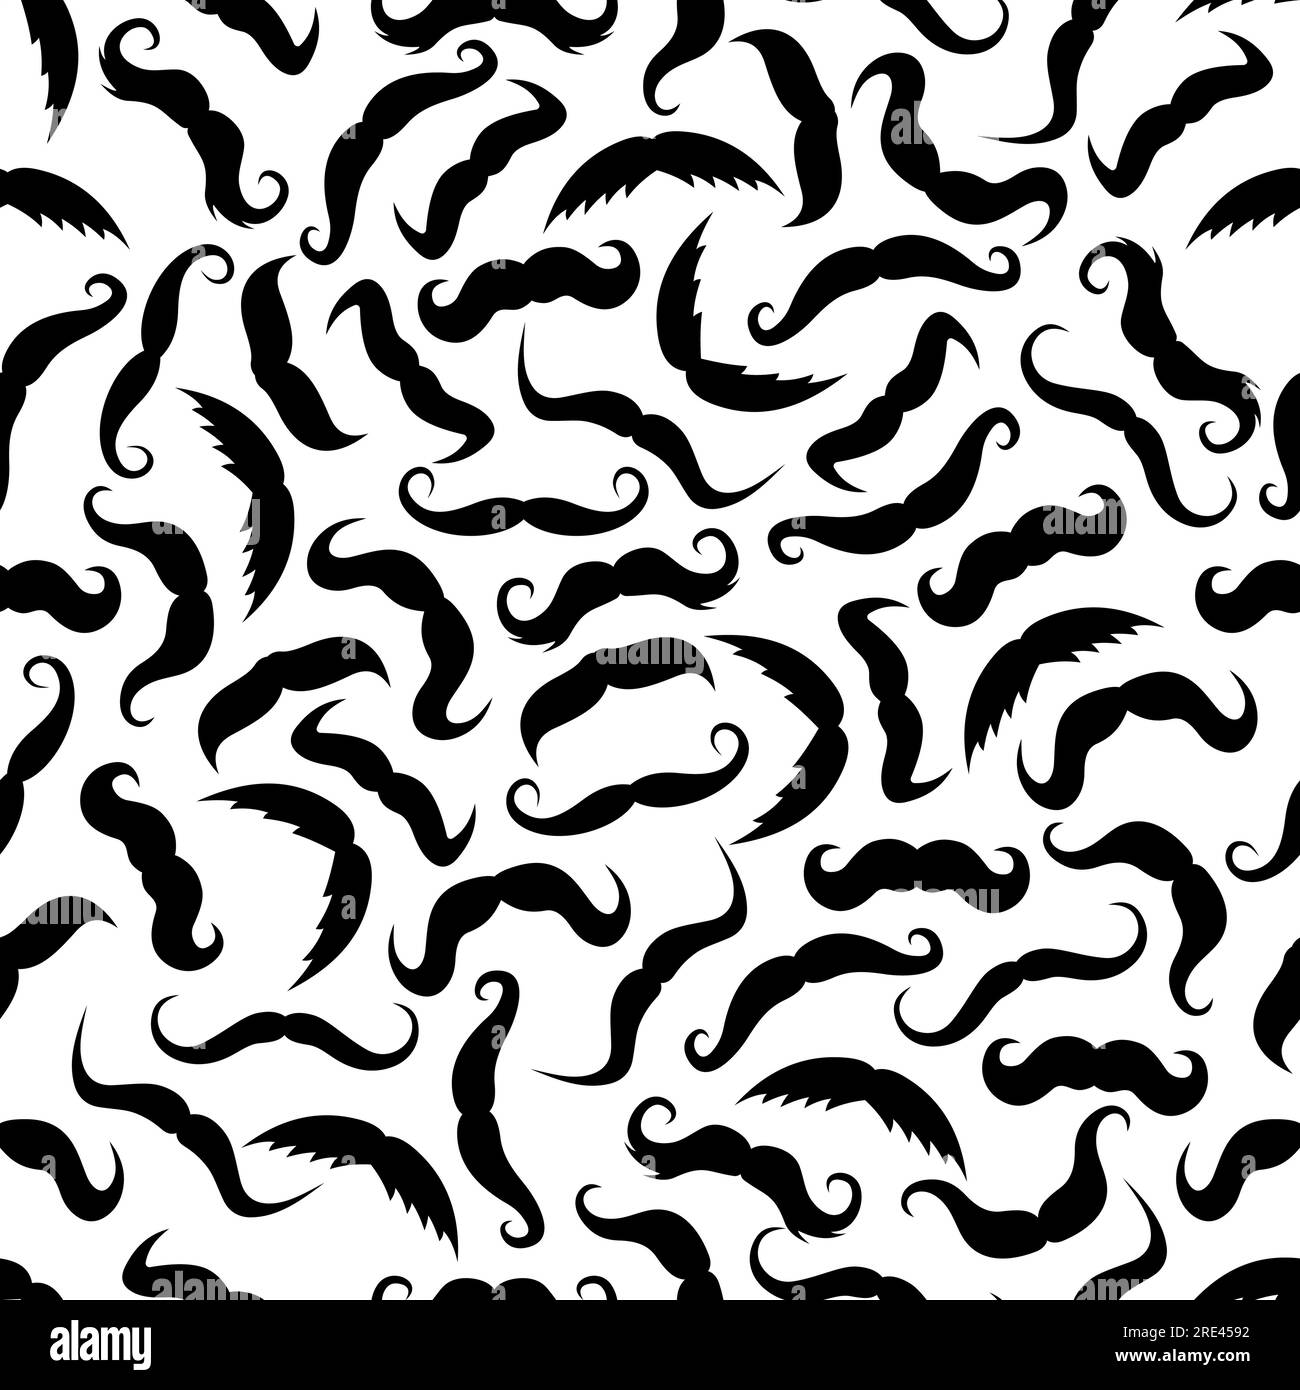 Klassische, geschwungene Schnurrbärte nahtloses Muster mit schwarzen Silhouetten mit französisch stilisiertem Schnurrbart auf weißem Hintergrund. Ideal für den Textildruck oder das Innendesign von Friseurgeschäften Stock Vektor